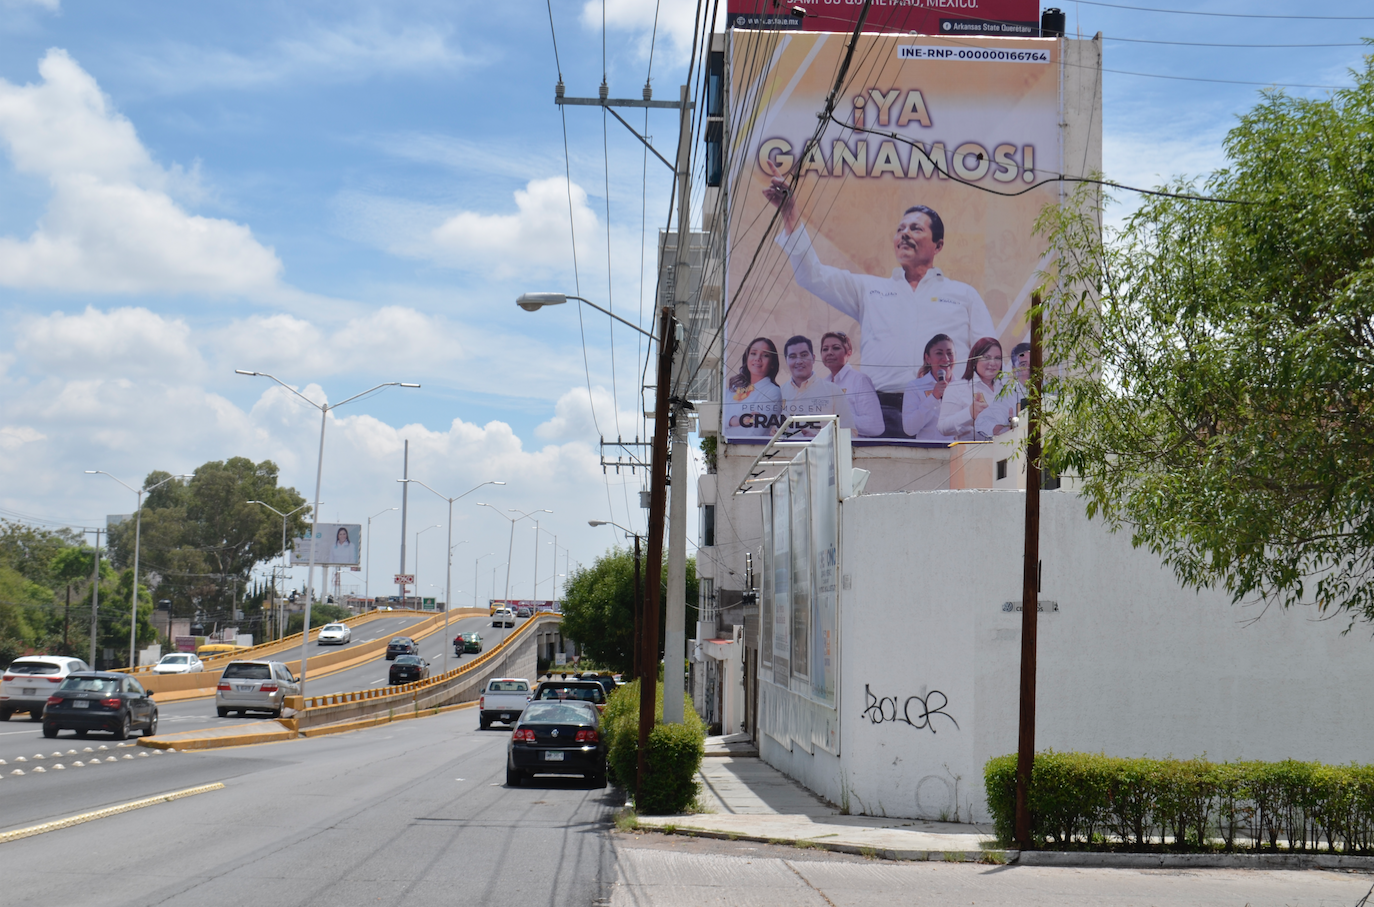  Absurda campaña de Gallardo, entorpece la elección: autoridades electorales